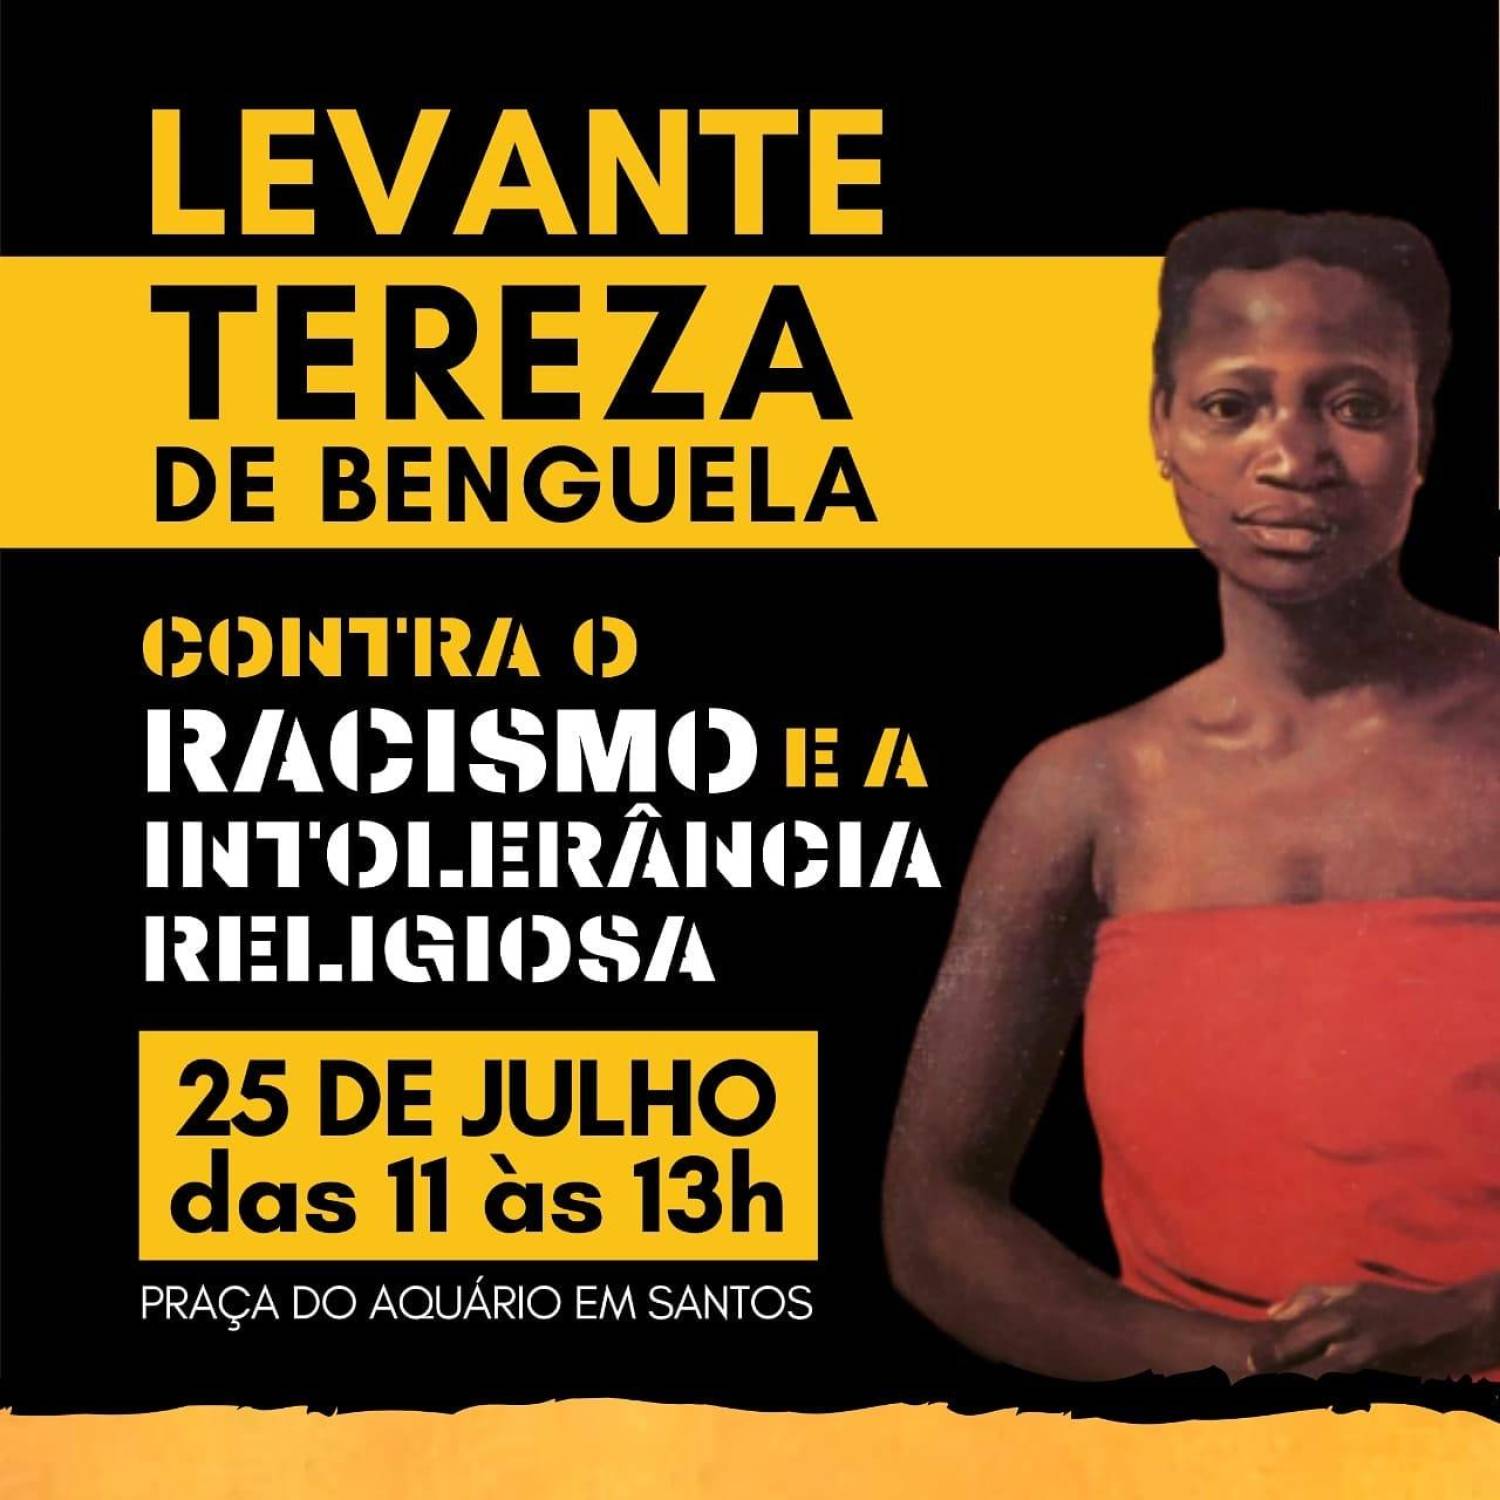 Levante Tereza de Benguela: Baixada Santista contra o Racismo e a Intolerância Religiosa